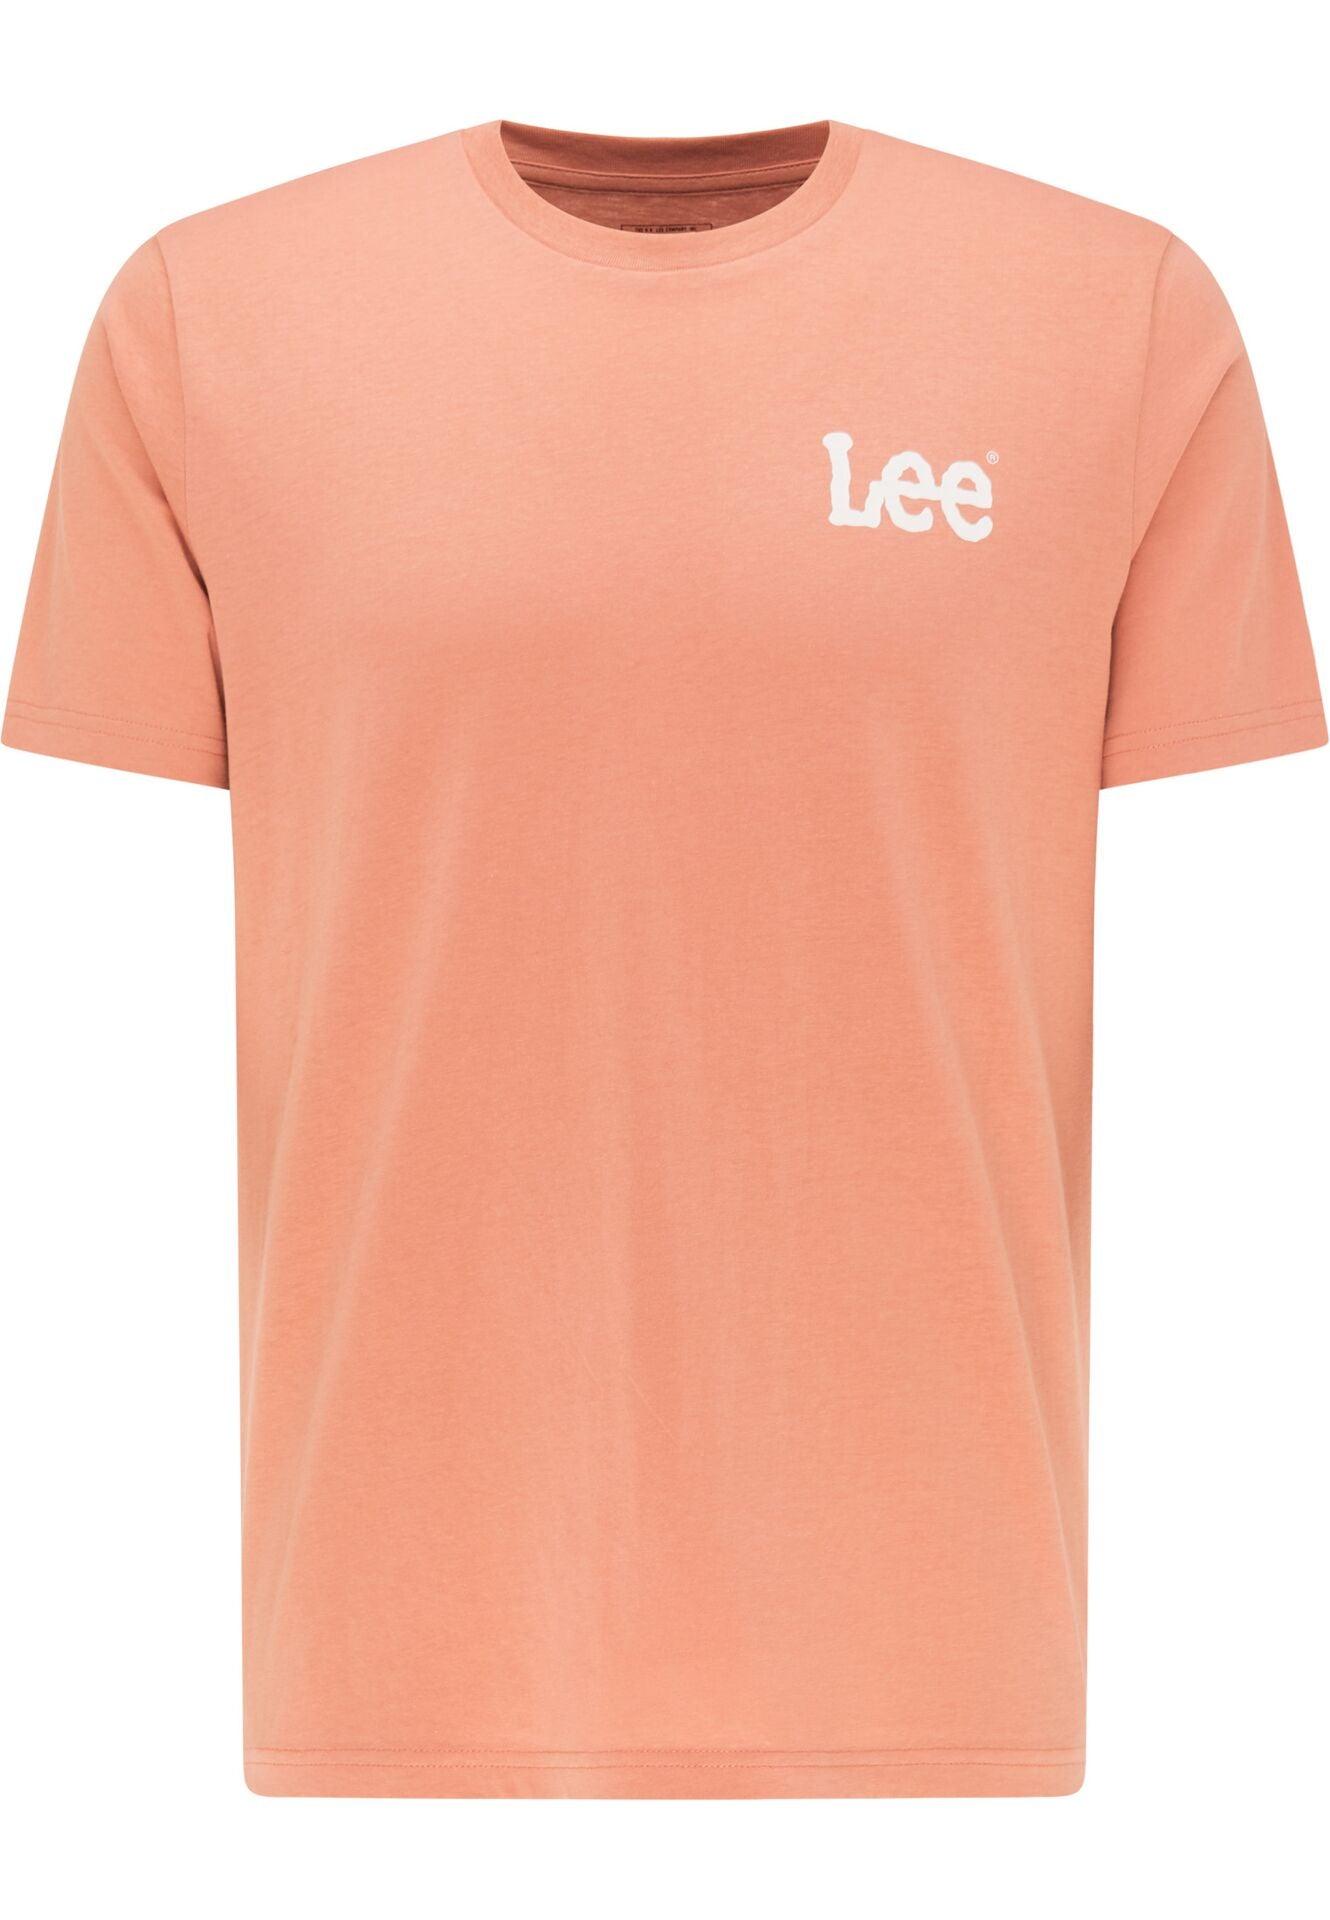 LEE - חולצת LOGO צבע אפרסק - MASHBIR//365